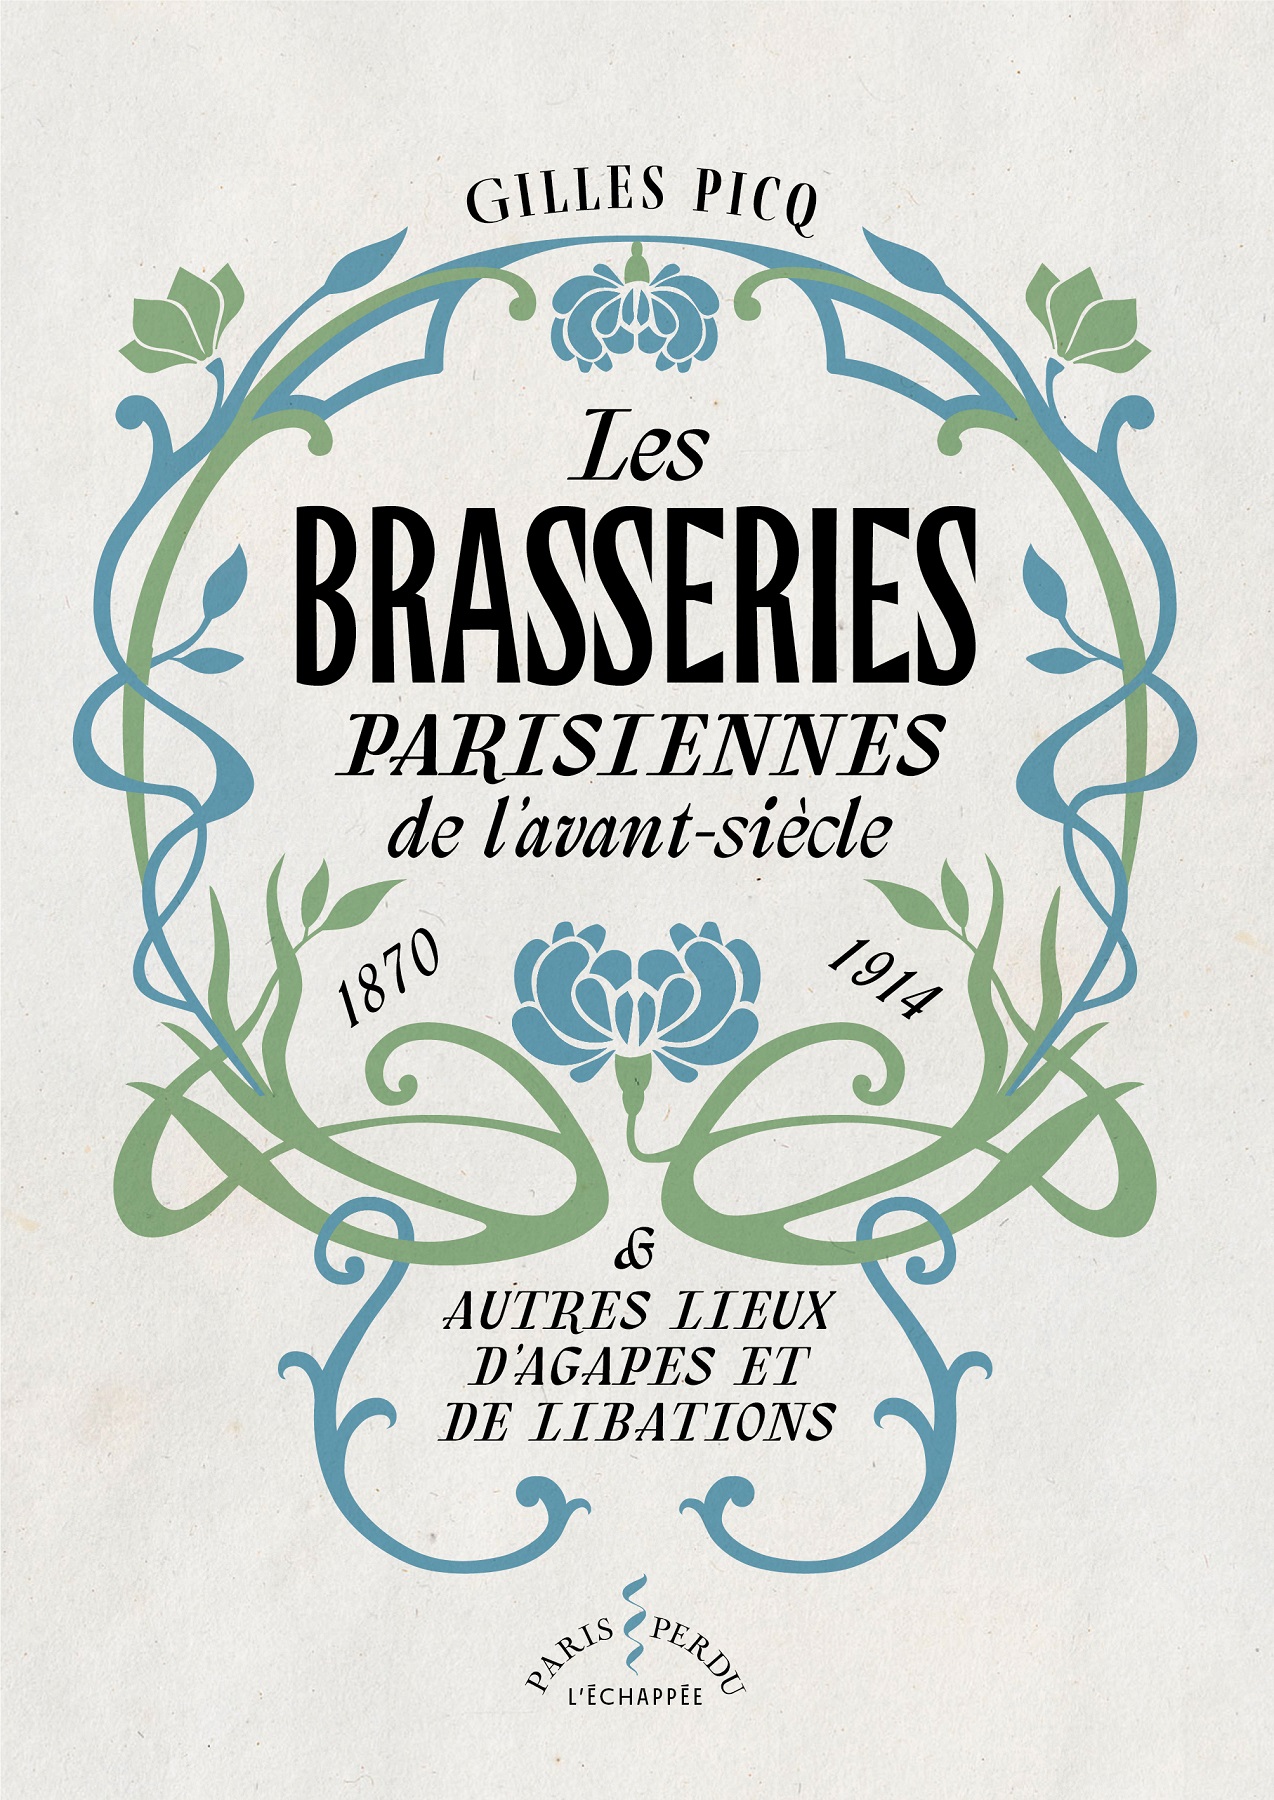 Couverture du livre "Les brasseries parisiennes de l'avant-siècle"